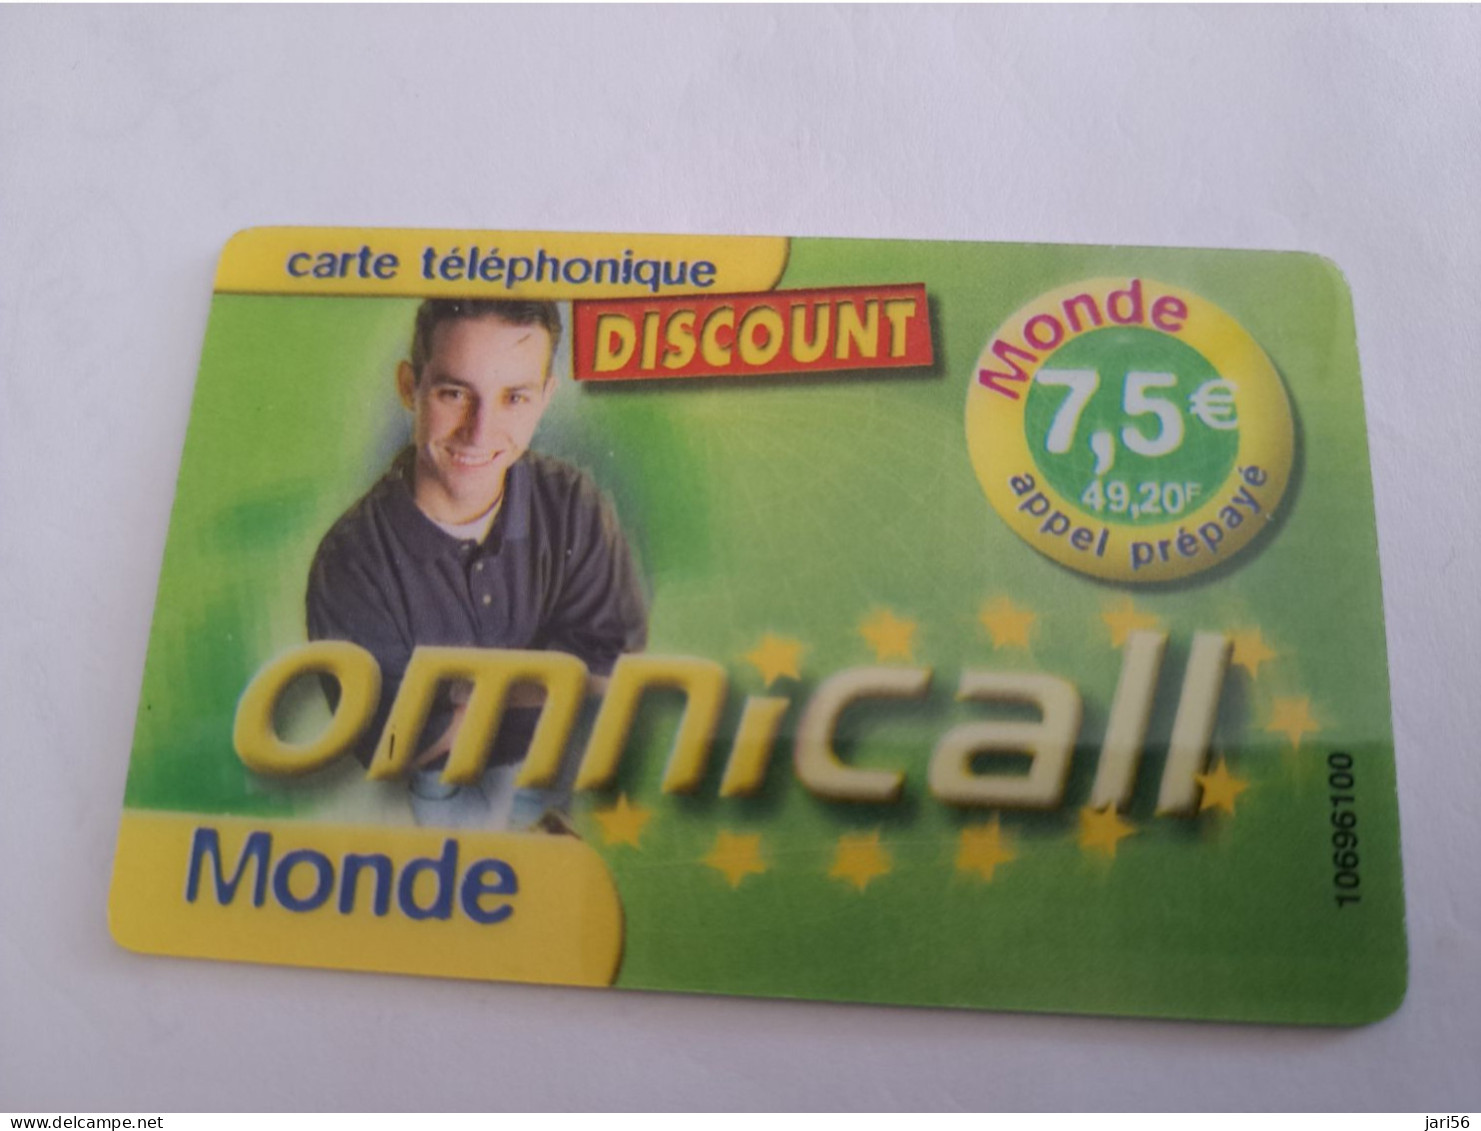 FRANCE/FRANKRIJK  / € 7,5 / OMNICALL MONDE / DISCOUNT     / PREPAID  USED         ** 14724** - Mobicartes (GSM/SIM)